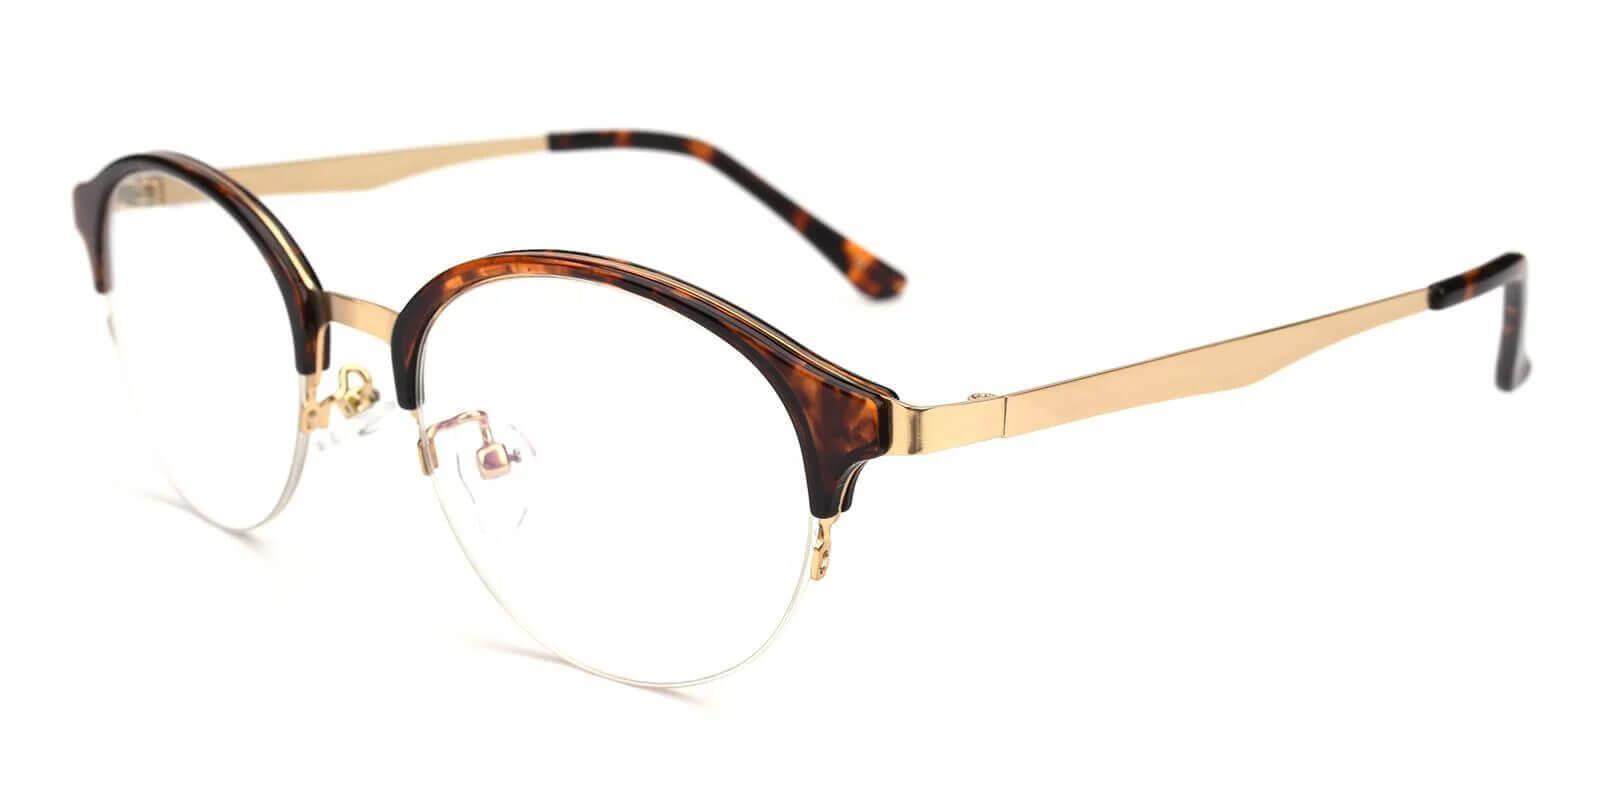 Dreamer Tortoise Metal Eyeglasses , NosePads Frames from ABBE Glasses